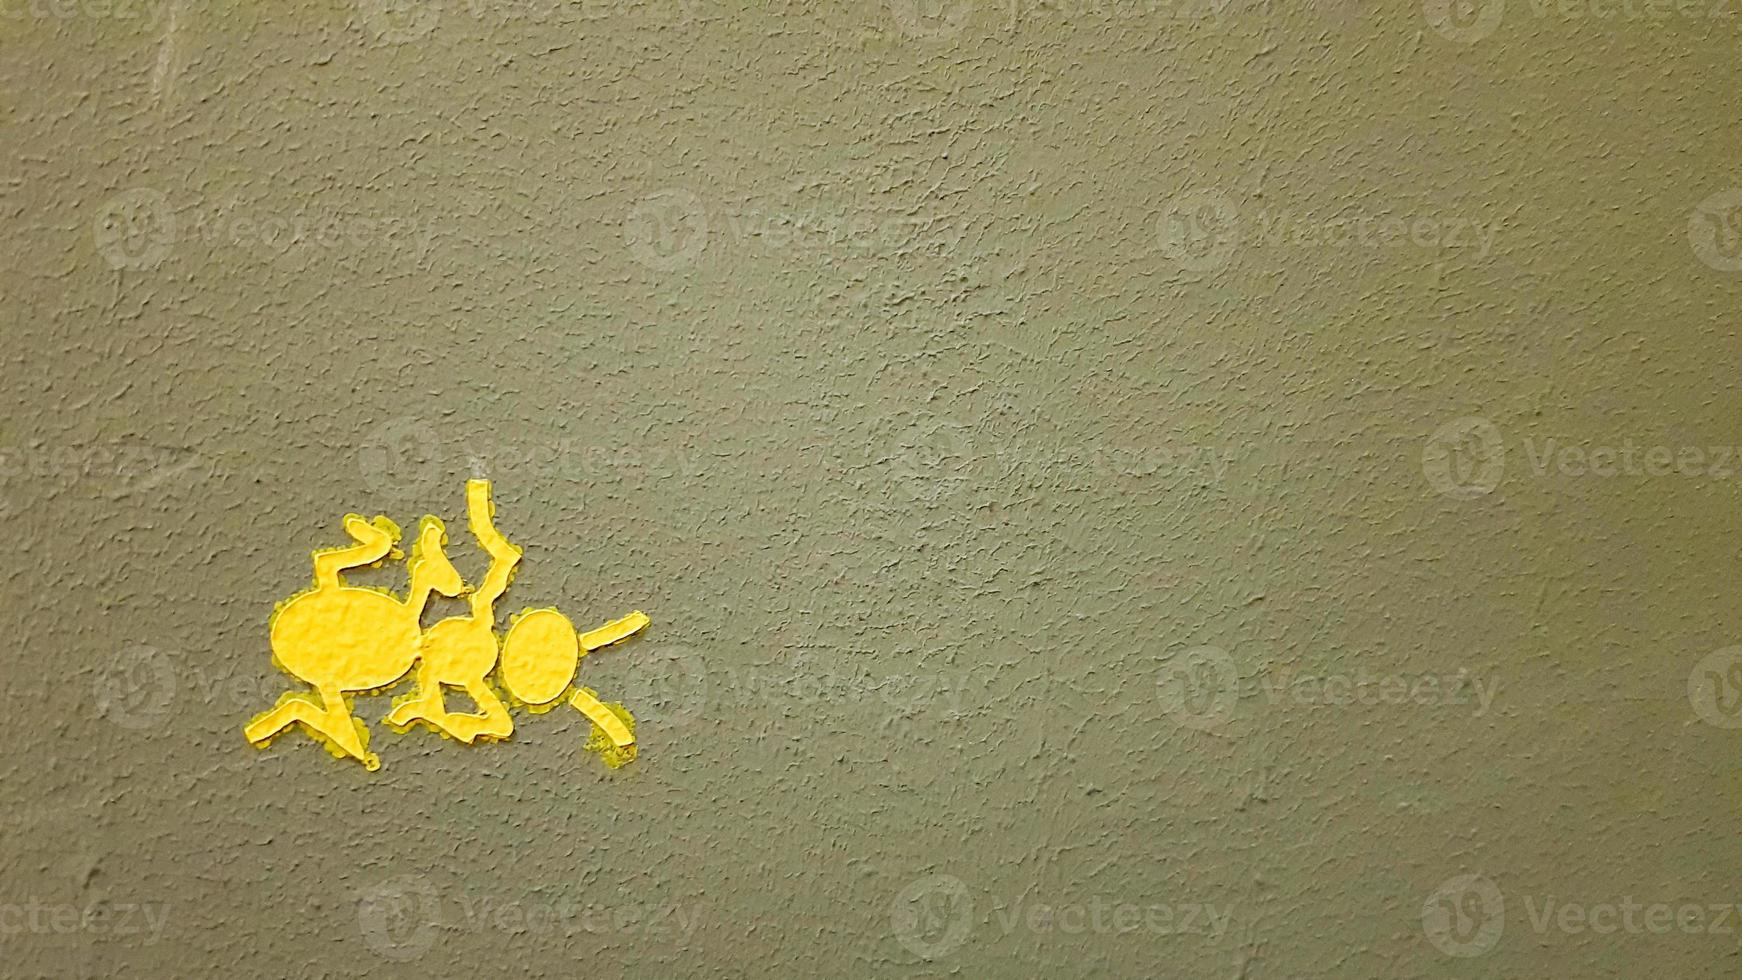 Gelb gemalte Ameise an einer grauen Wand. Ameise, die eine Wand klettert. bunte Ameisenhintergründe. lokale Künstler schmücken die Wände der Straßen. foto